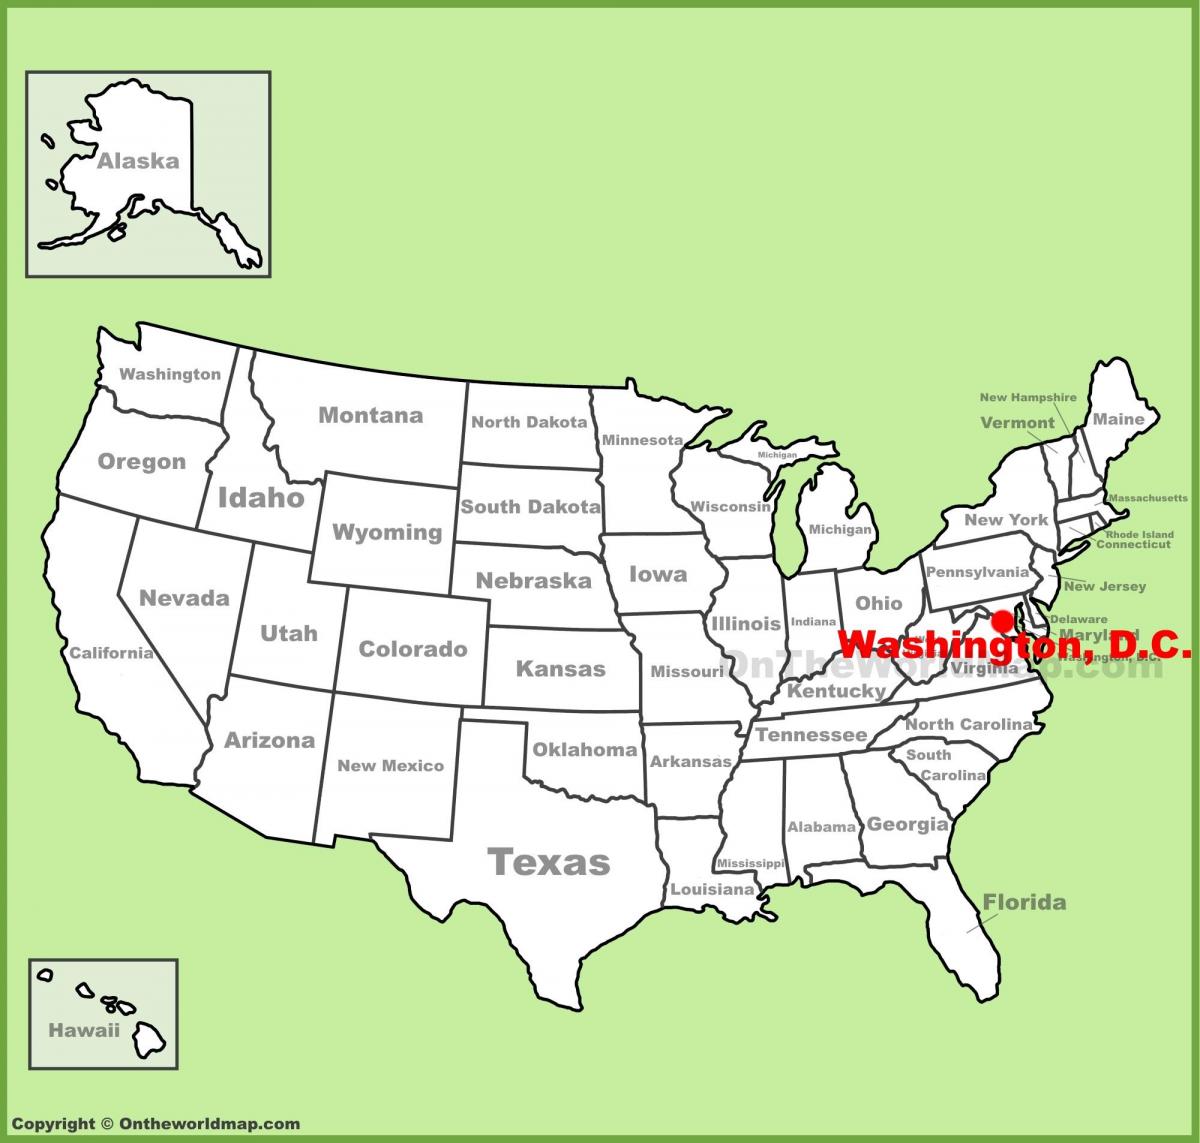 华盛顿特区在美国地图